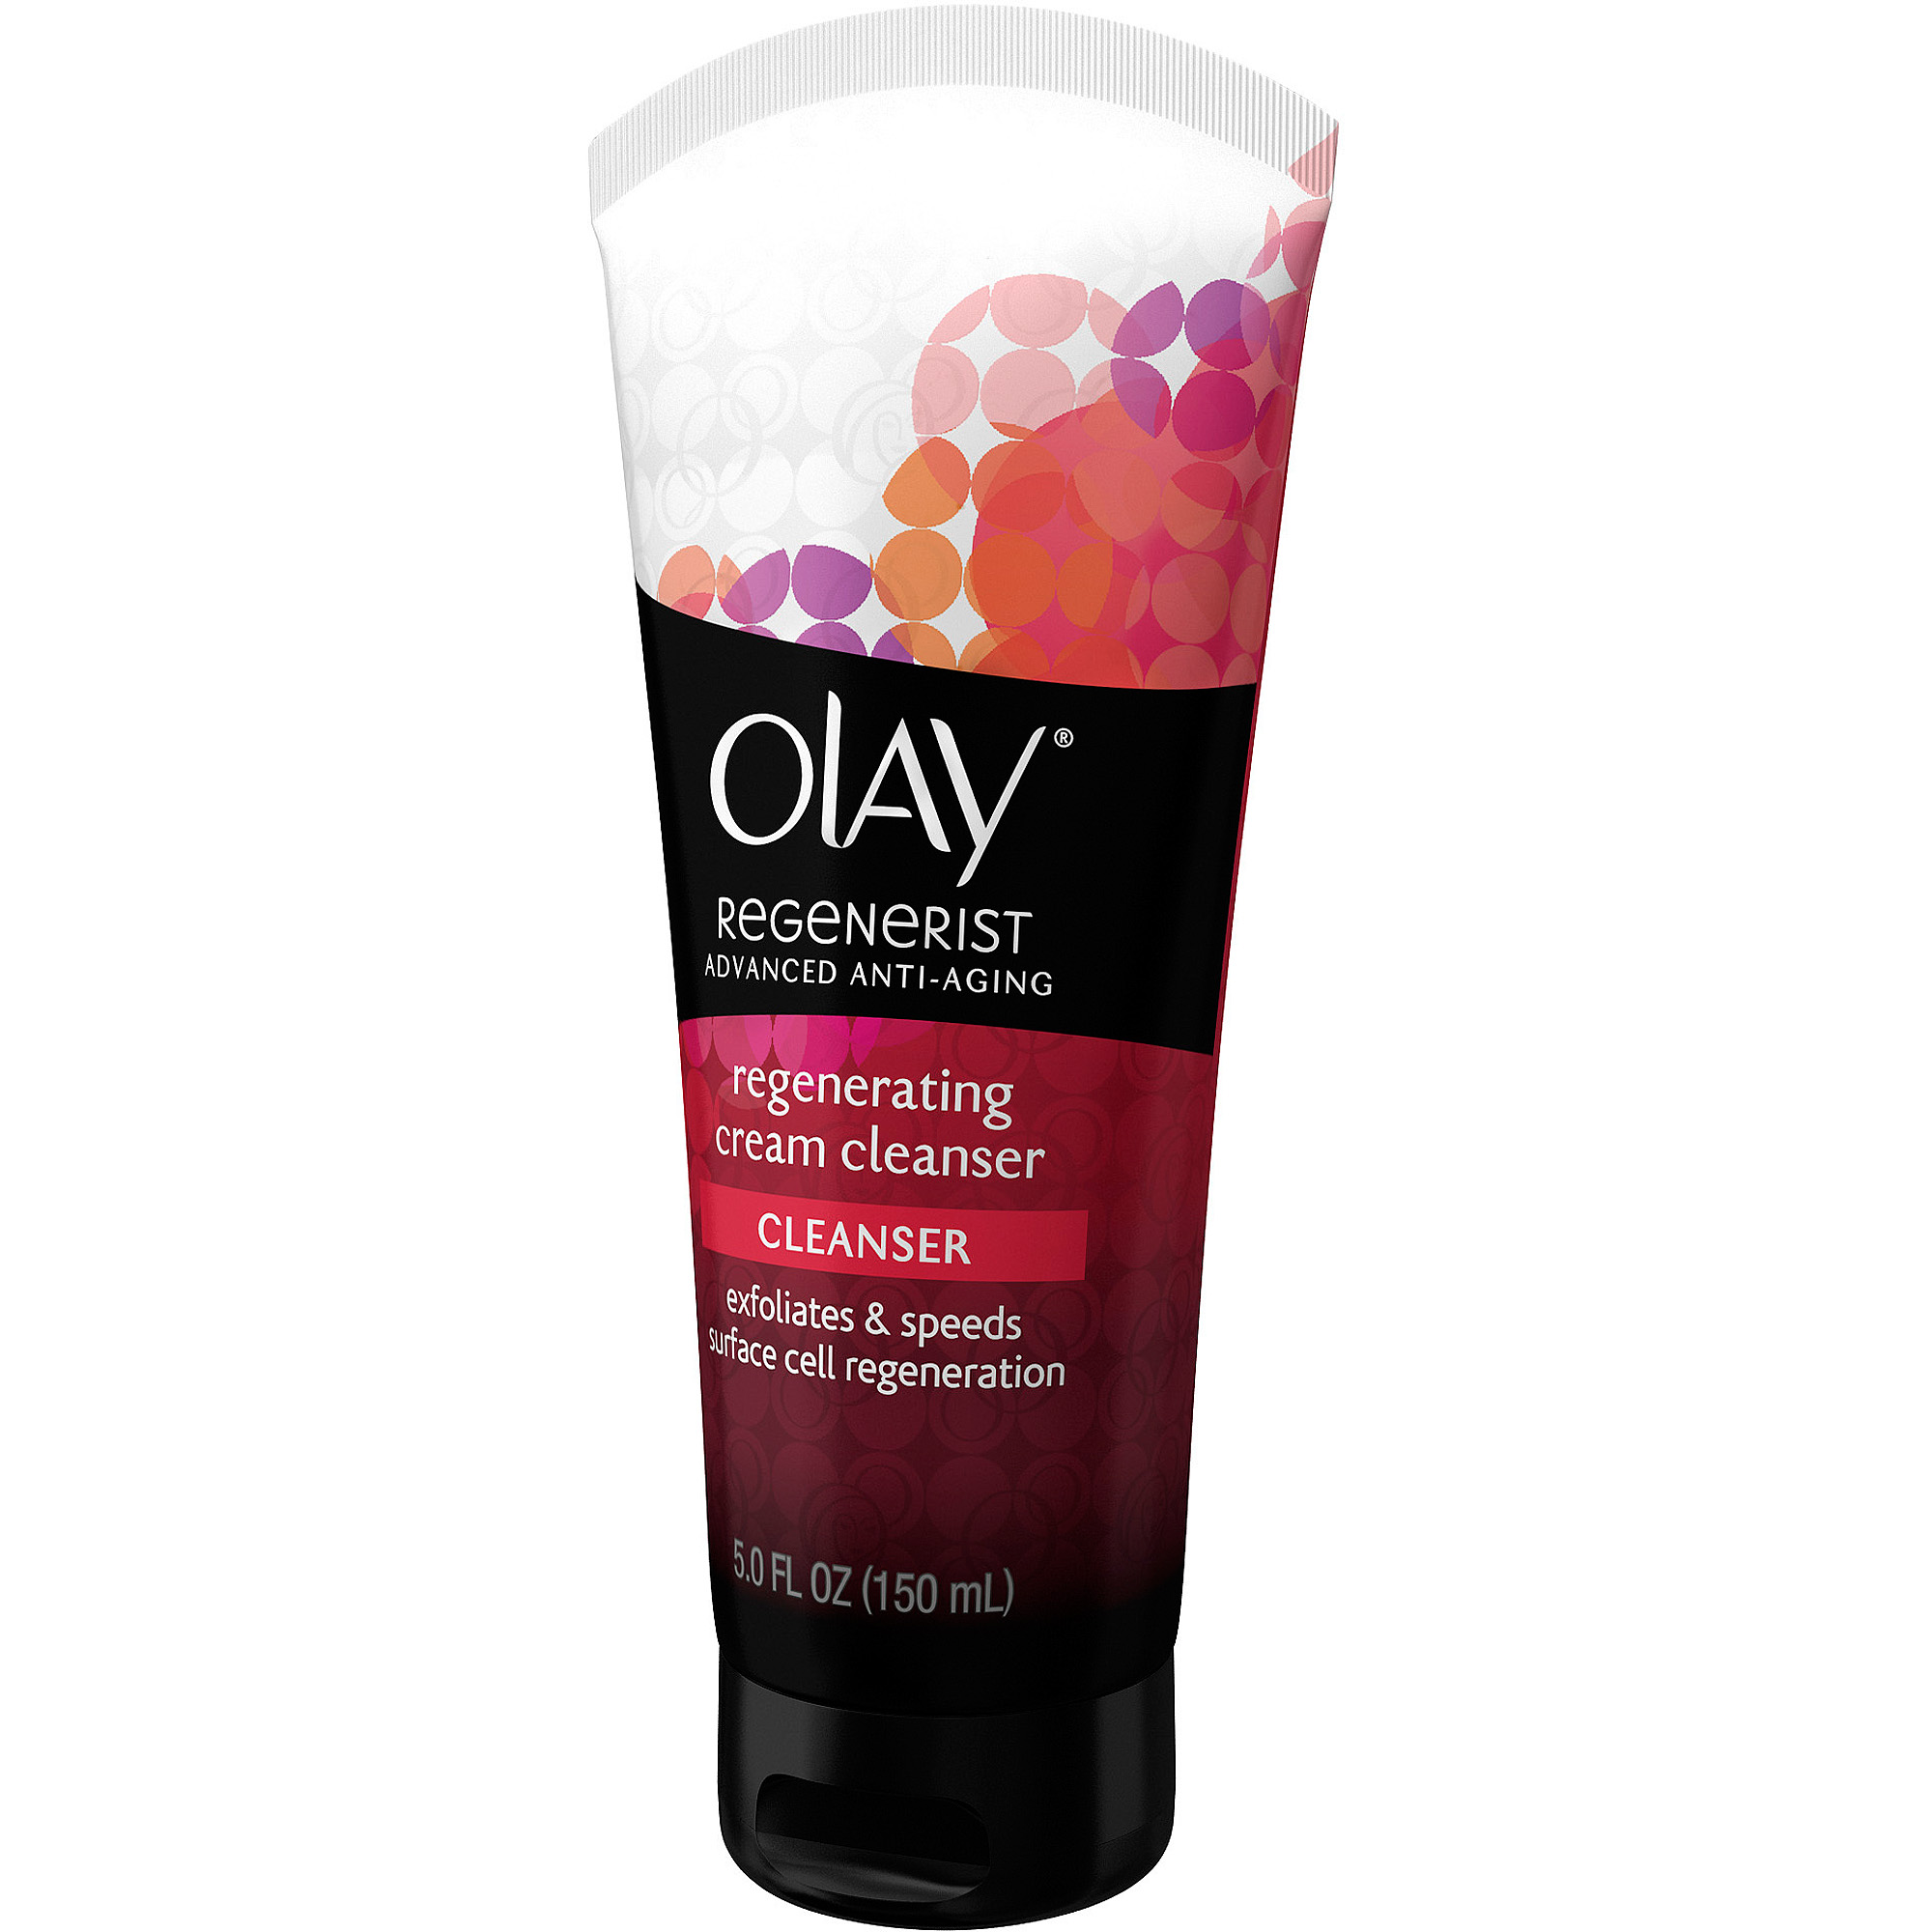 Olay Regenerist Regenerating Cream Cleanser 5 fl oz - image 1 of 5